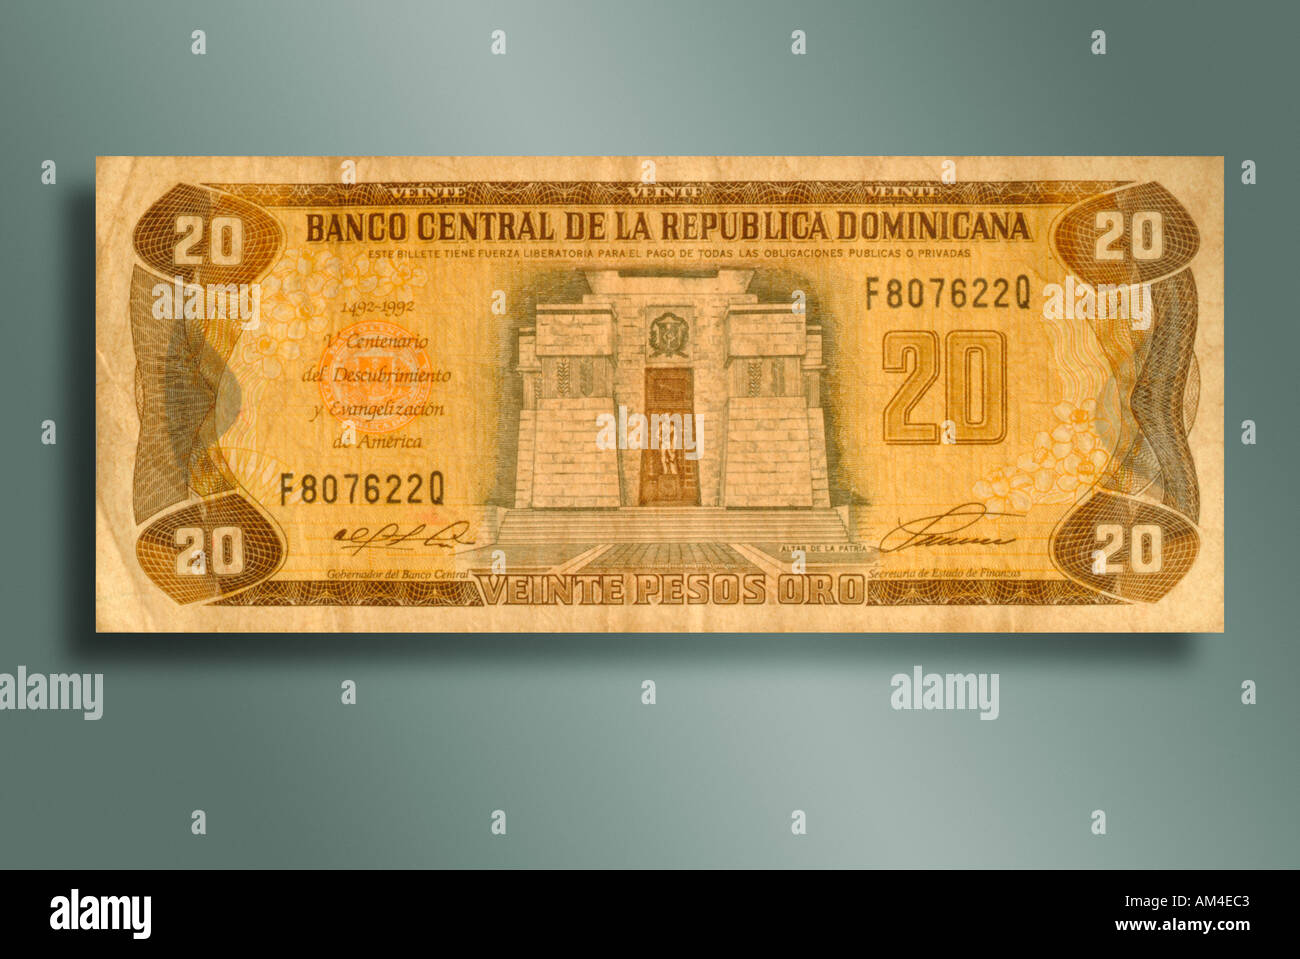 20 Peso bill from the Dominican Republic Stock Photo